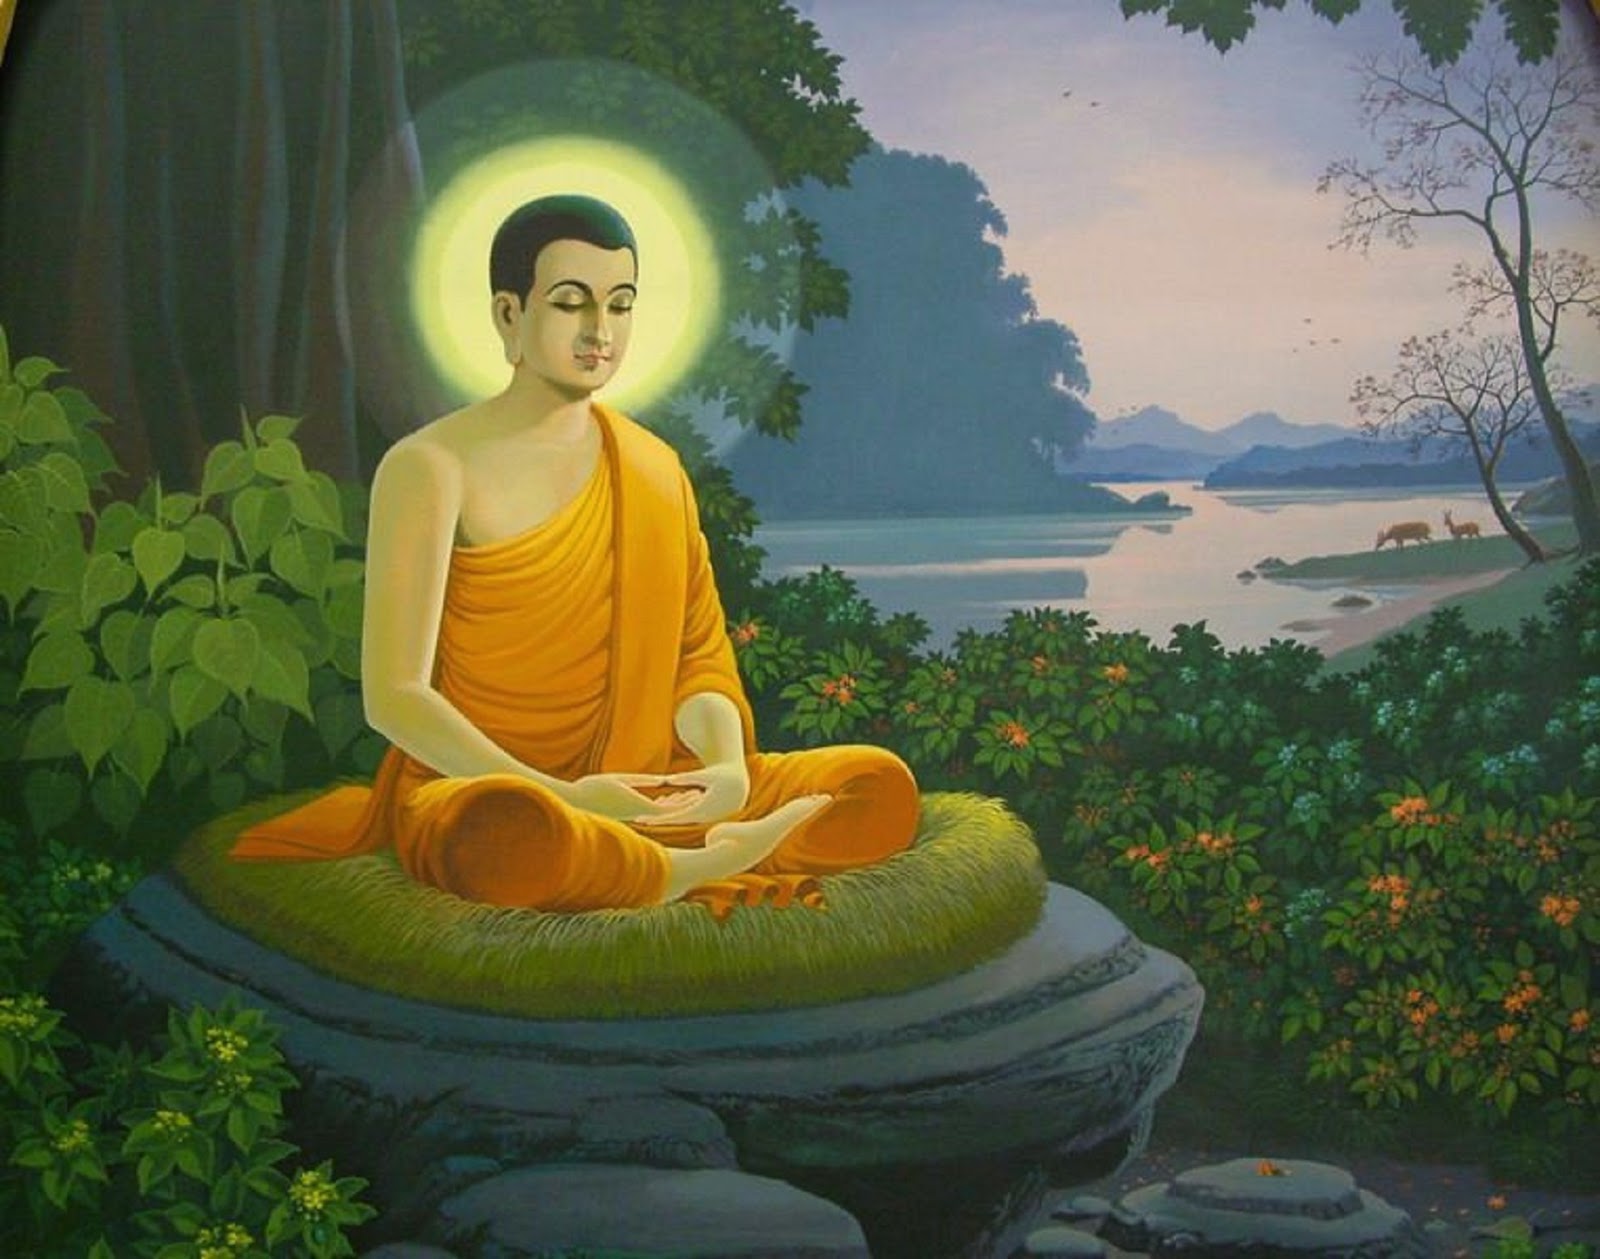 Ảnh Phật Thích Ca Mâu Ni: Đến với những bức ảnh Phật Thích Ca Mâu Ni, bạn sẽ được tận hưởng không gian thanh tịnh, được đắm mình trong trầm lắng và hoà quyện với sự nghiêm trang của đạo Phật.